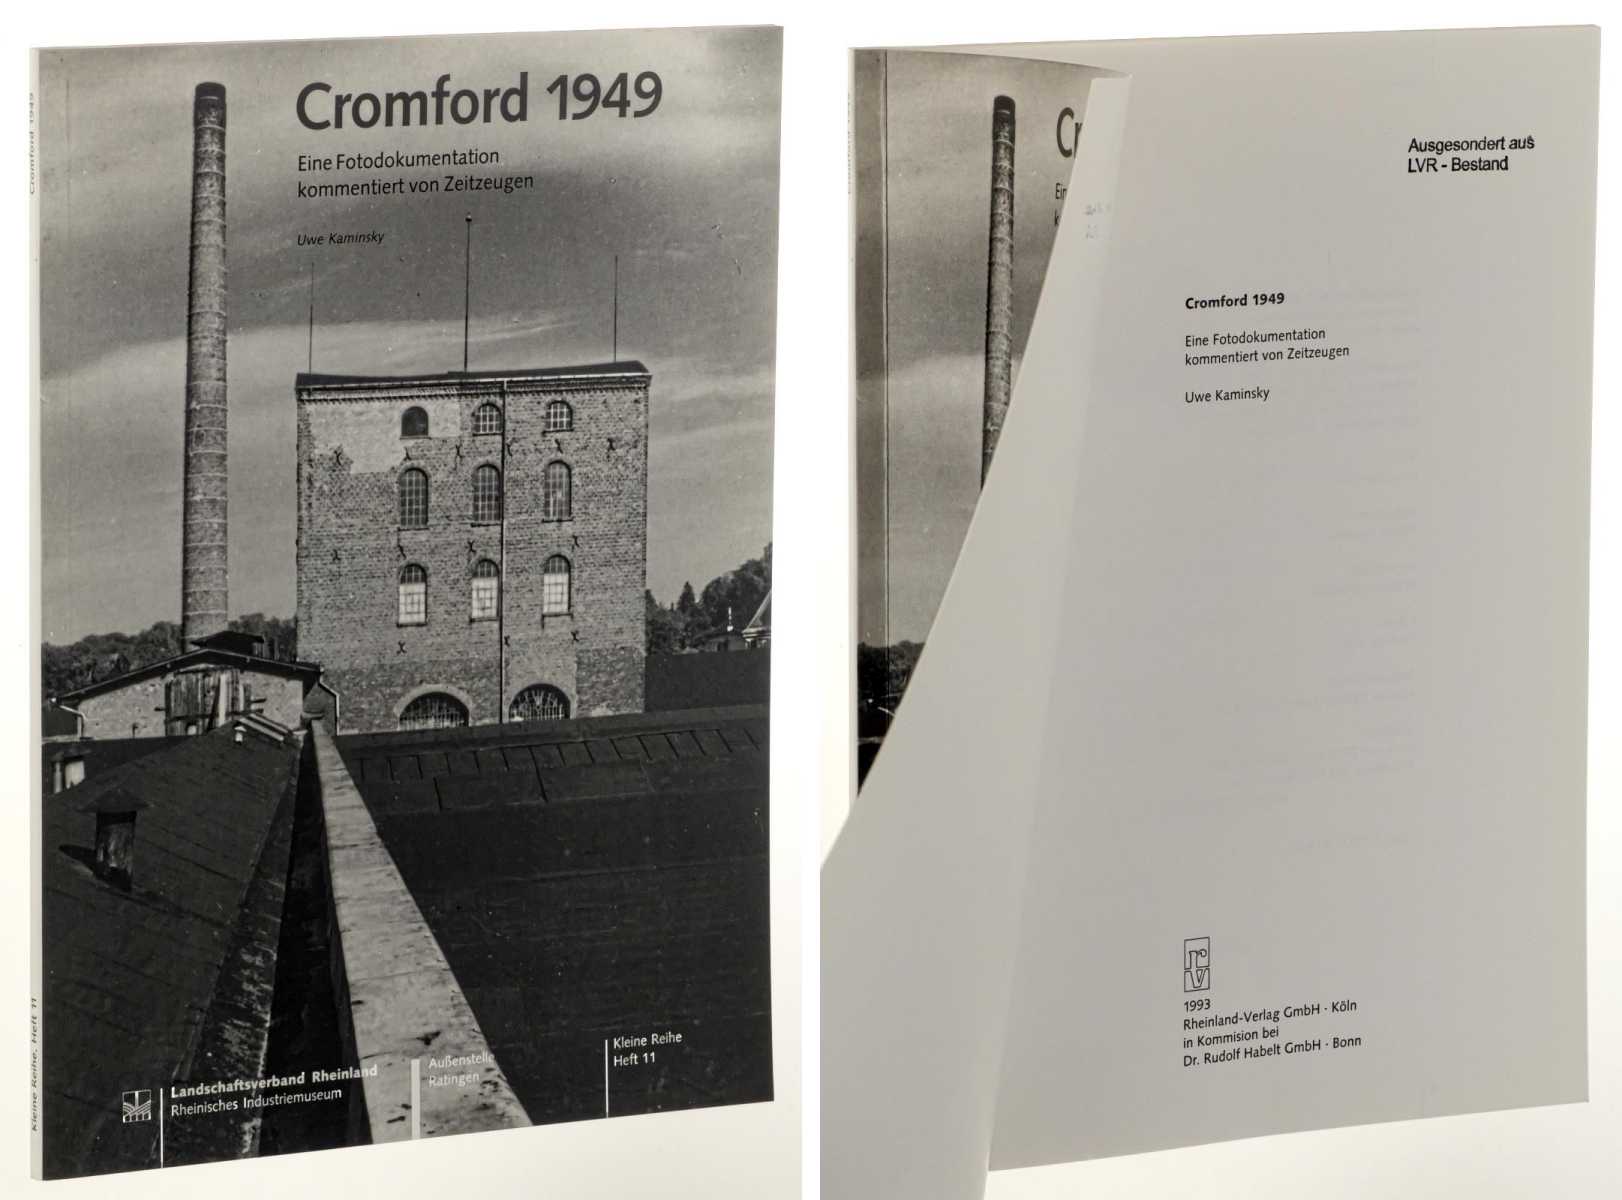   Cromford 1949. Eine Fotodokumentation kommentiert von Zeitzeugen. 